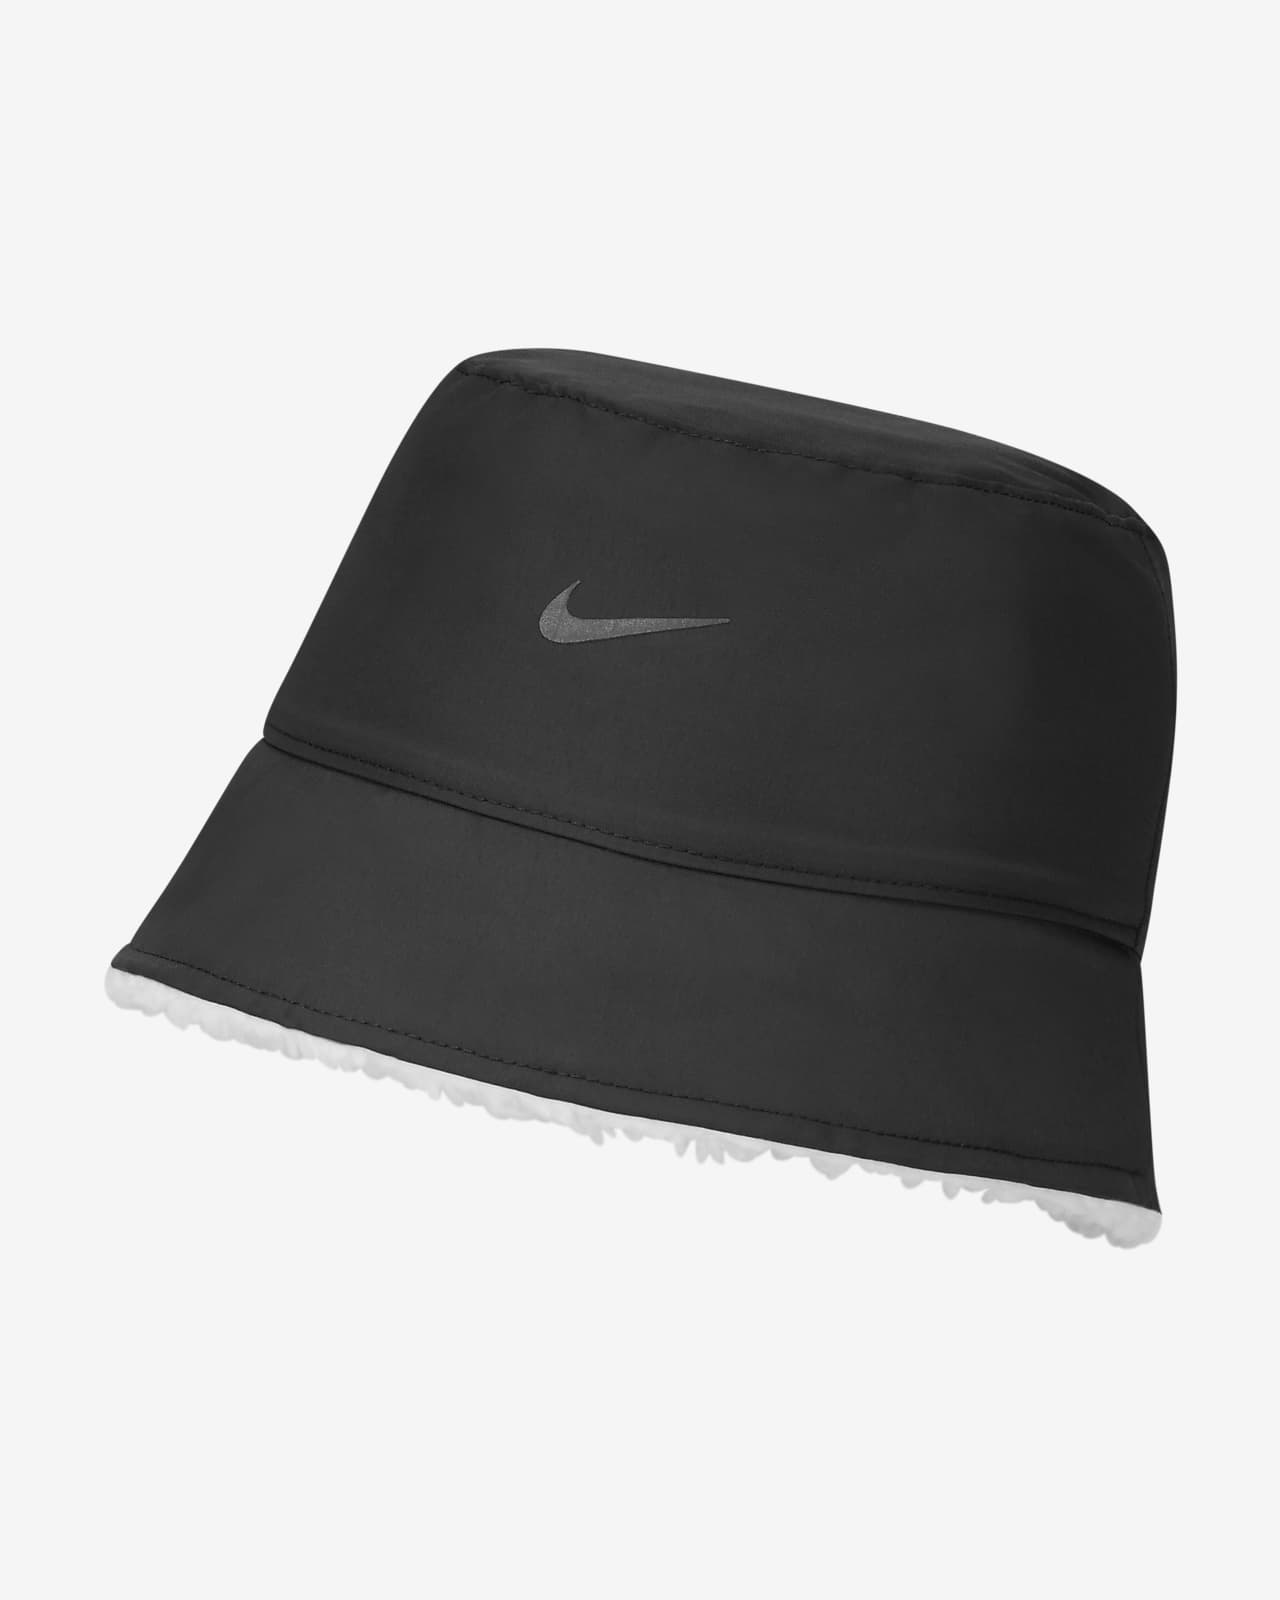 Nike Sherpa Bucket Hat - Black